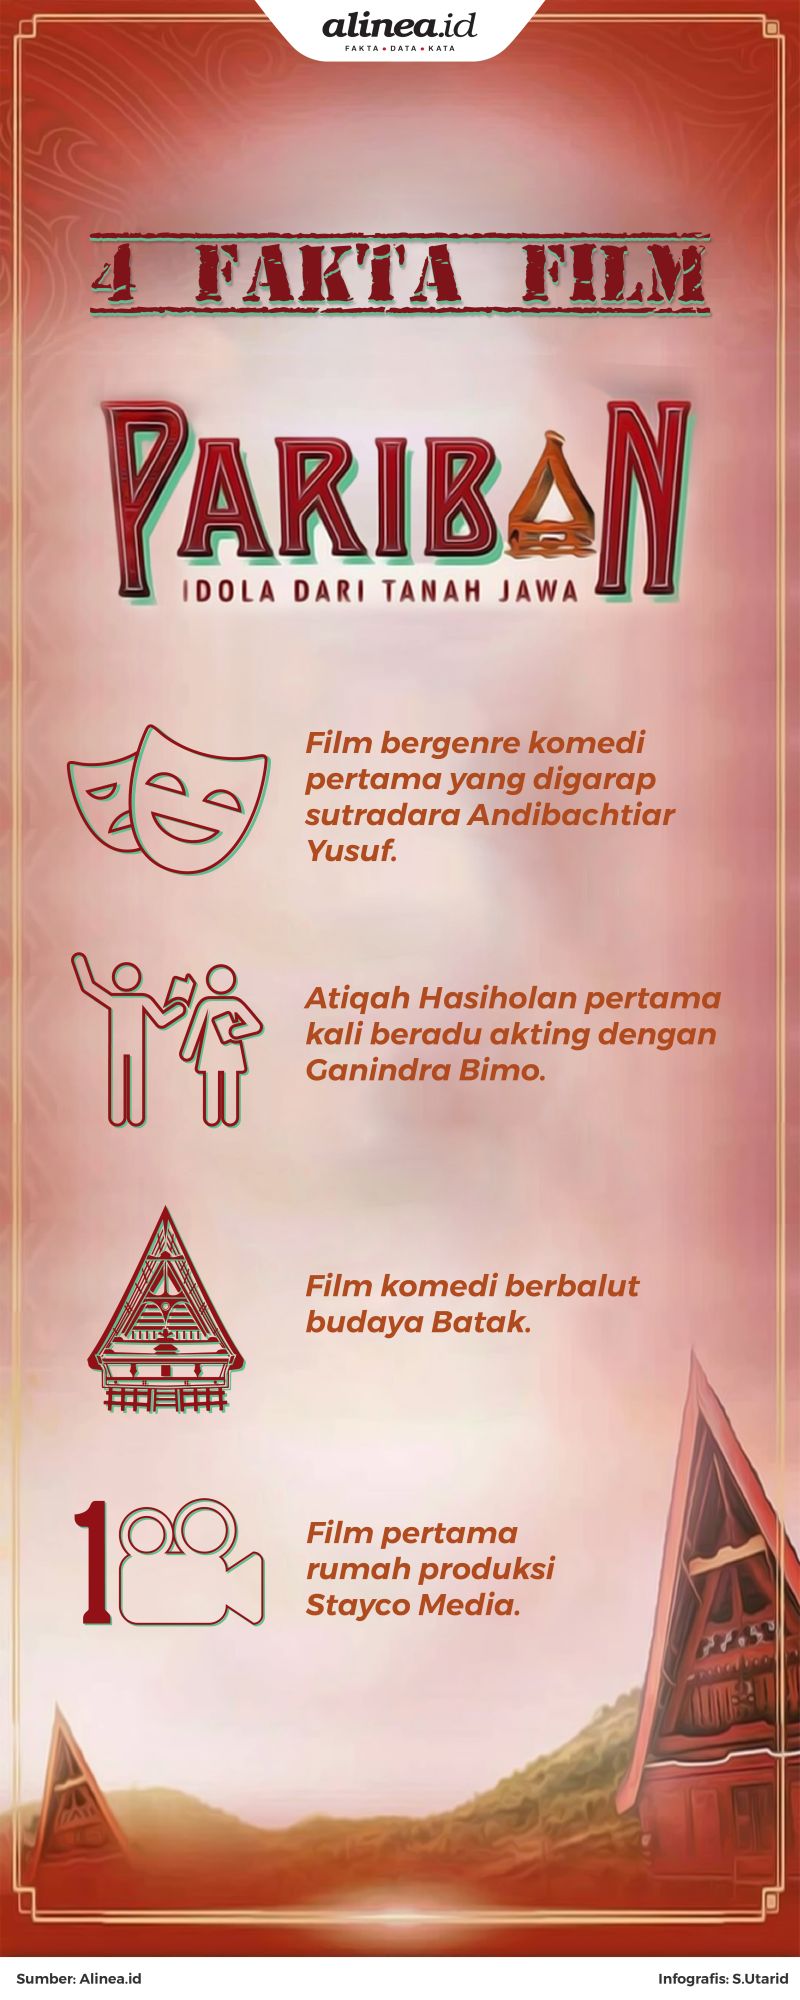 Film yang mengangkat tradisi dan budaya Batak bergenre komedi.